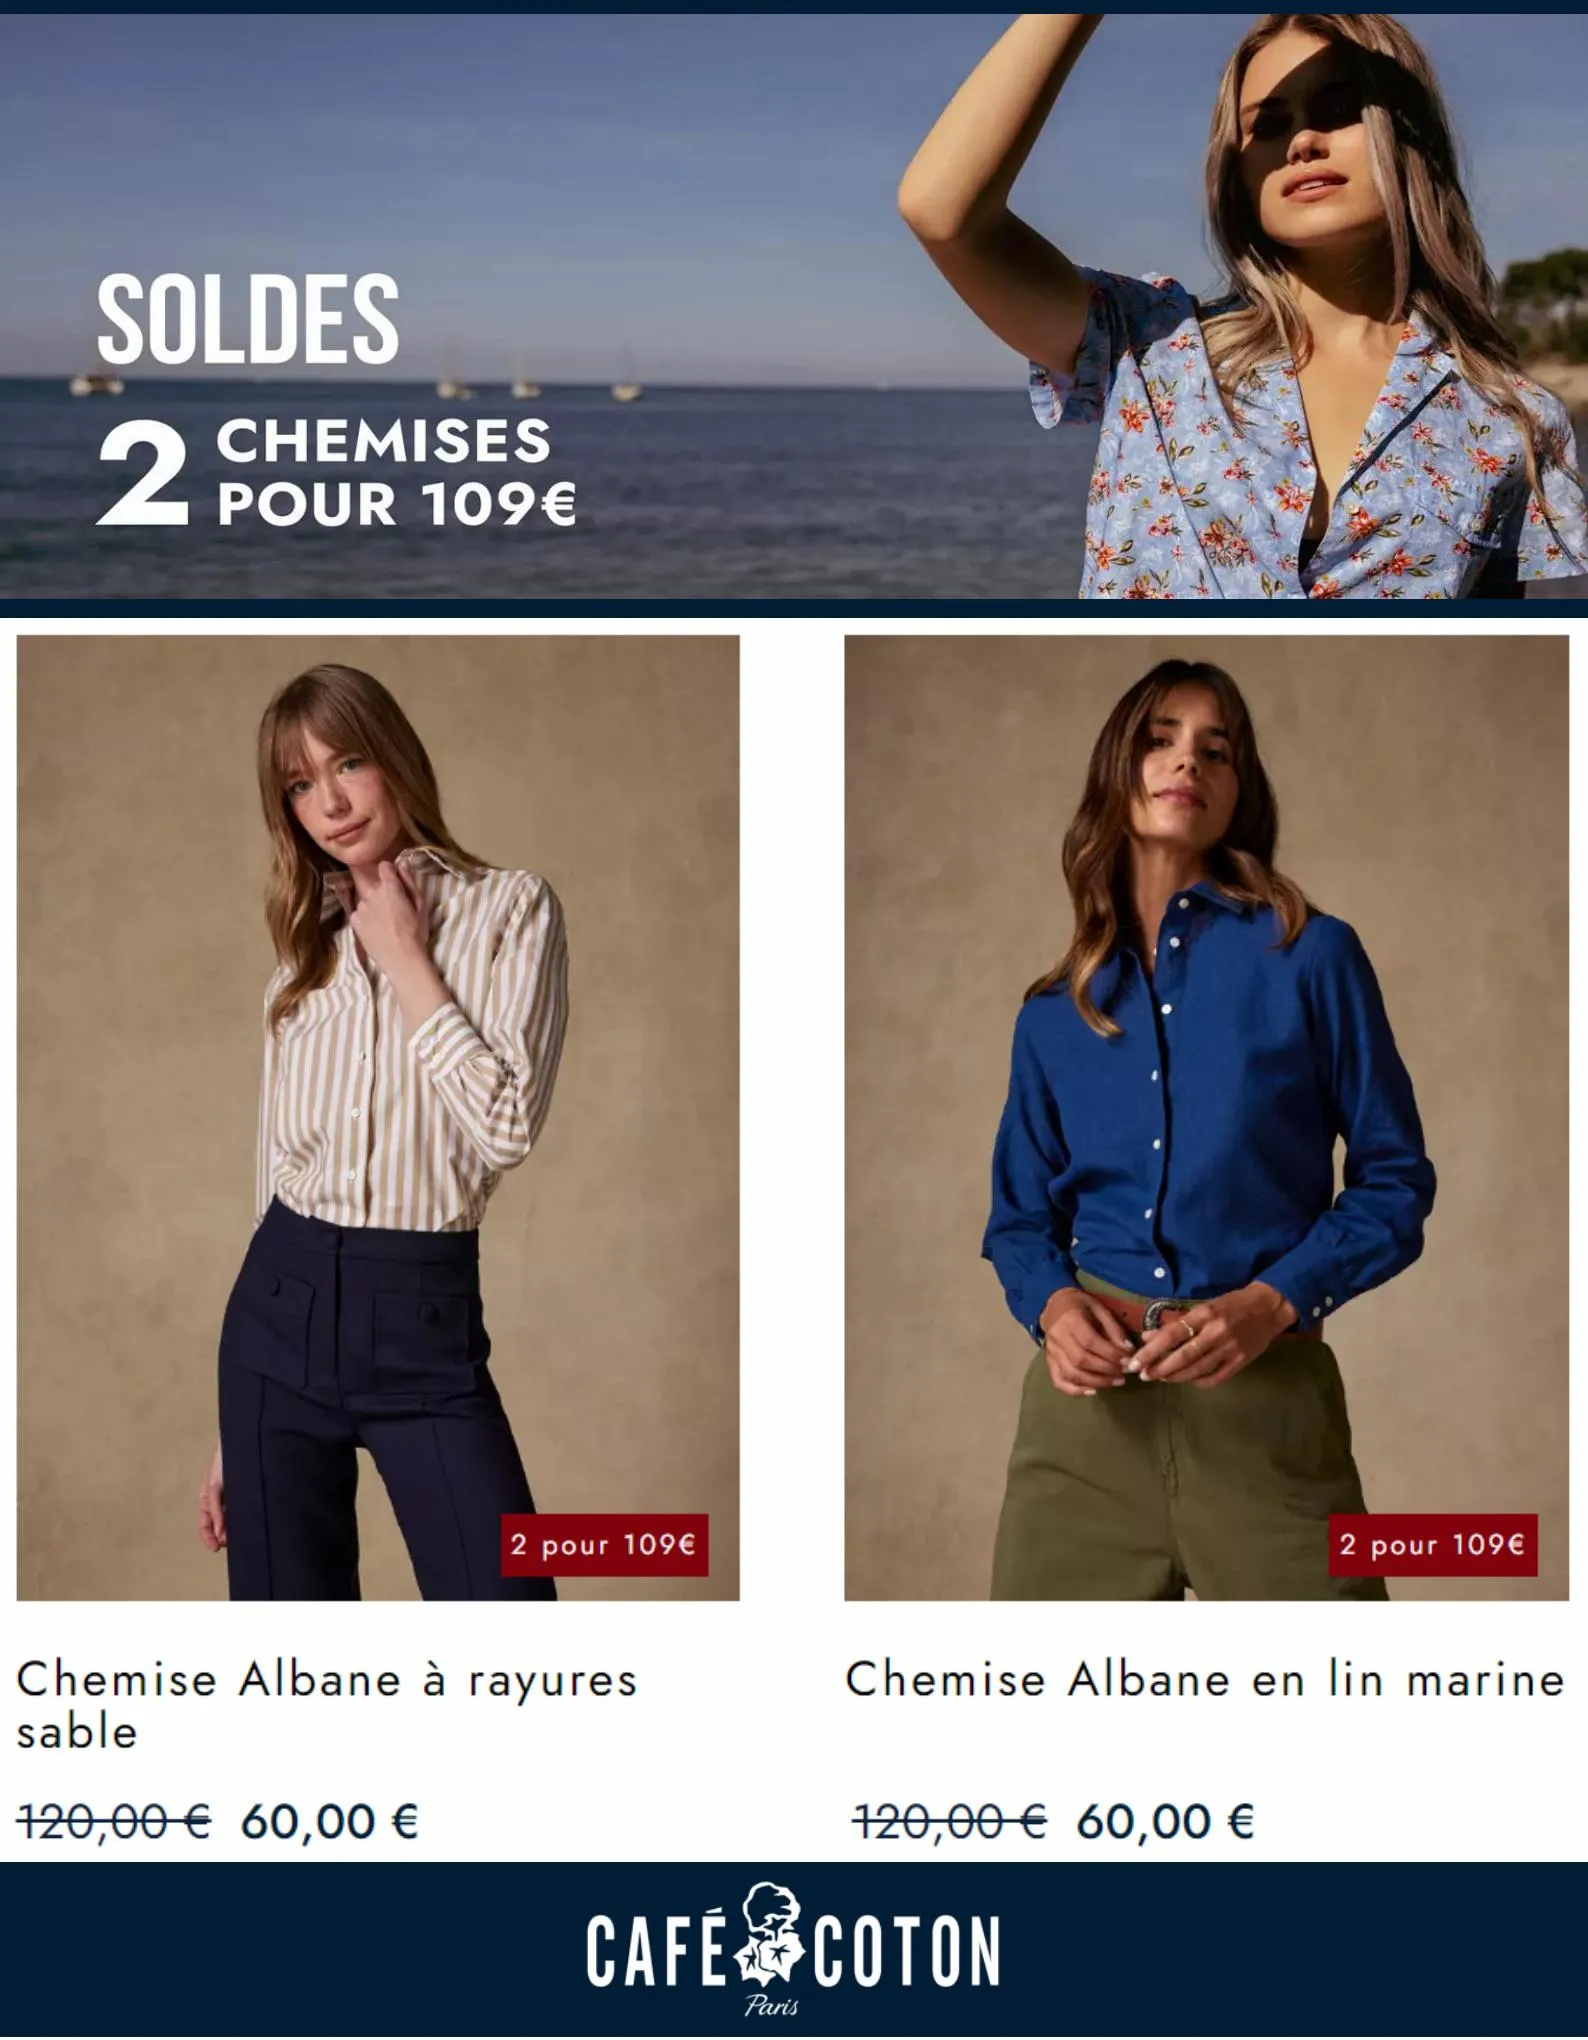 Catalogue Soldes 2 Chemises pour 109€, page 00005